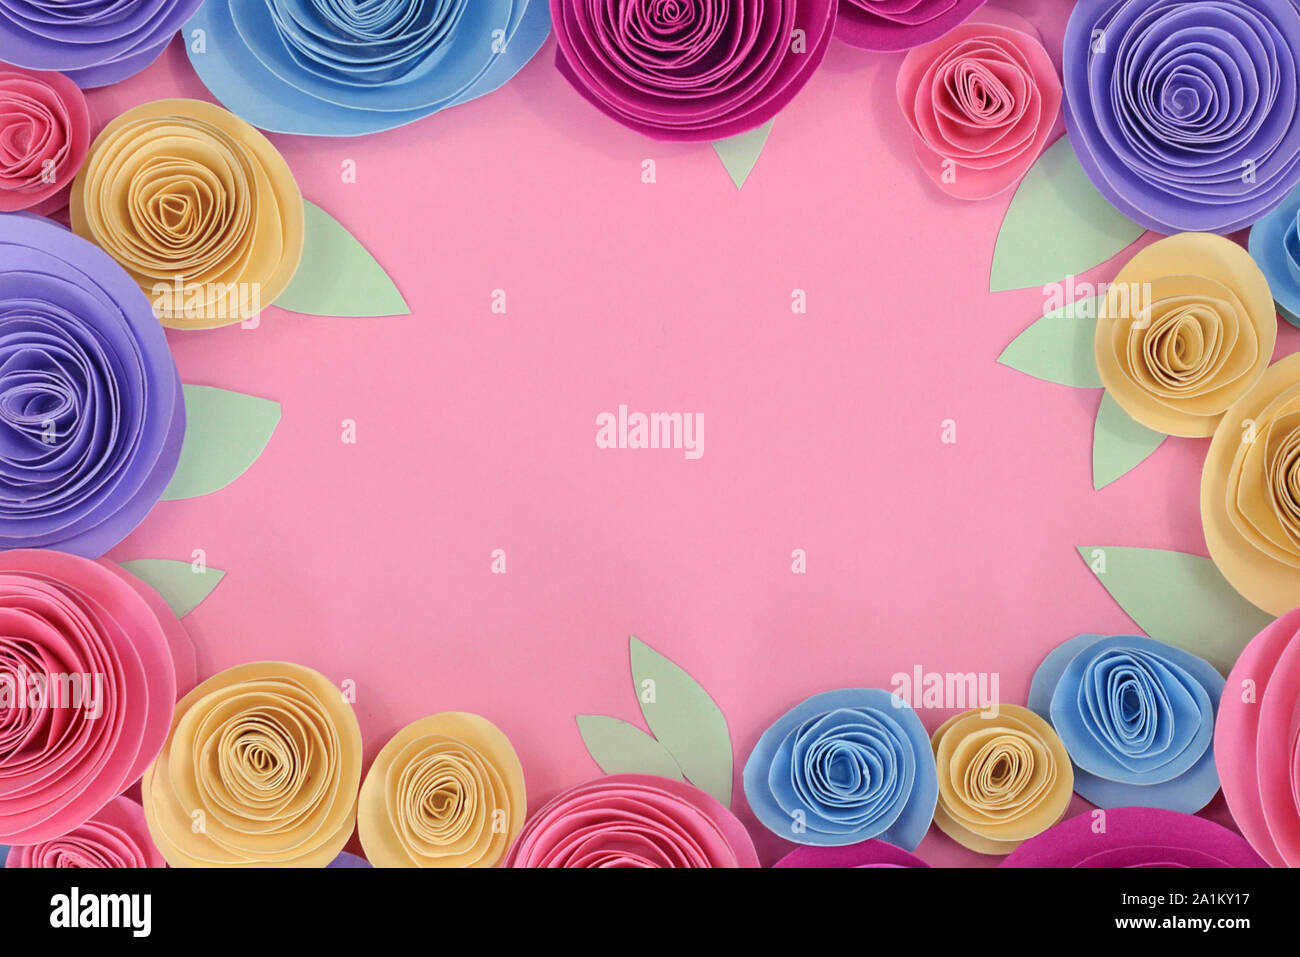 Color pastello carta artigianale rose piatto sfondo laici con fiori e foglie intorno al endges e rosa copia vuota dello spazio nel centro Foto Stock